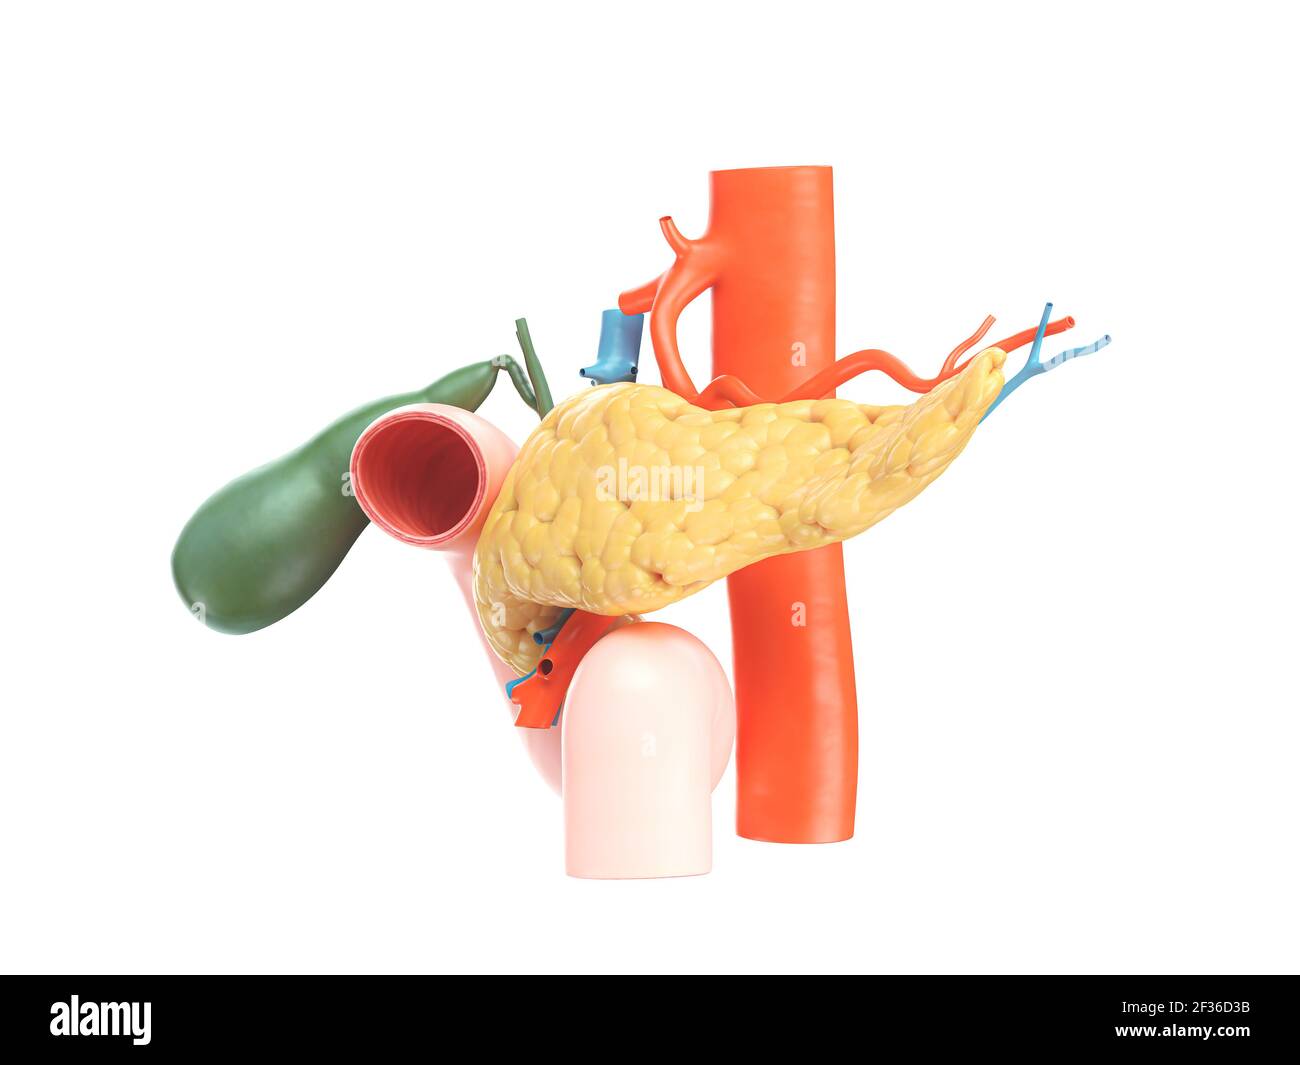 Illustration anatomique précise du pancréas humain avec vésicule biliaire, duodénum et vaisseaux sanguins. Vue latérale. rendu 3d Banque D'Images